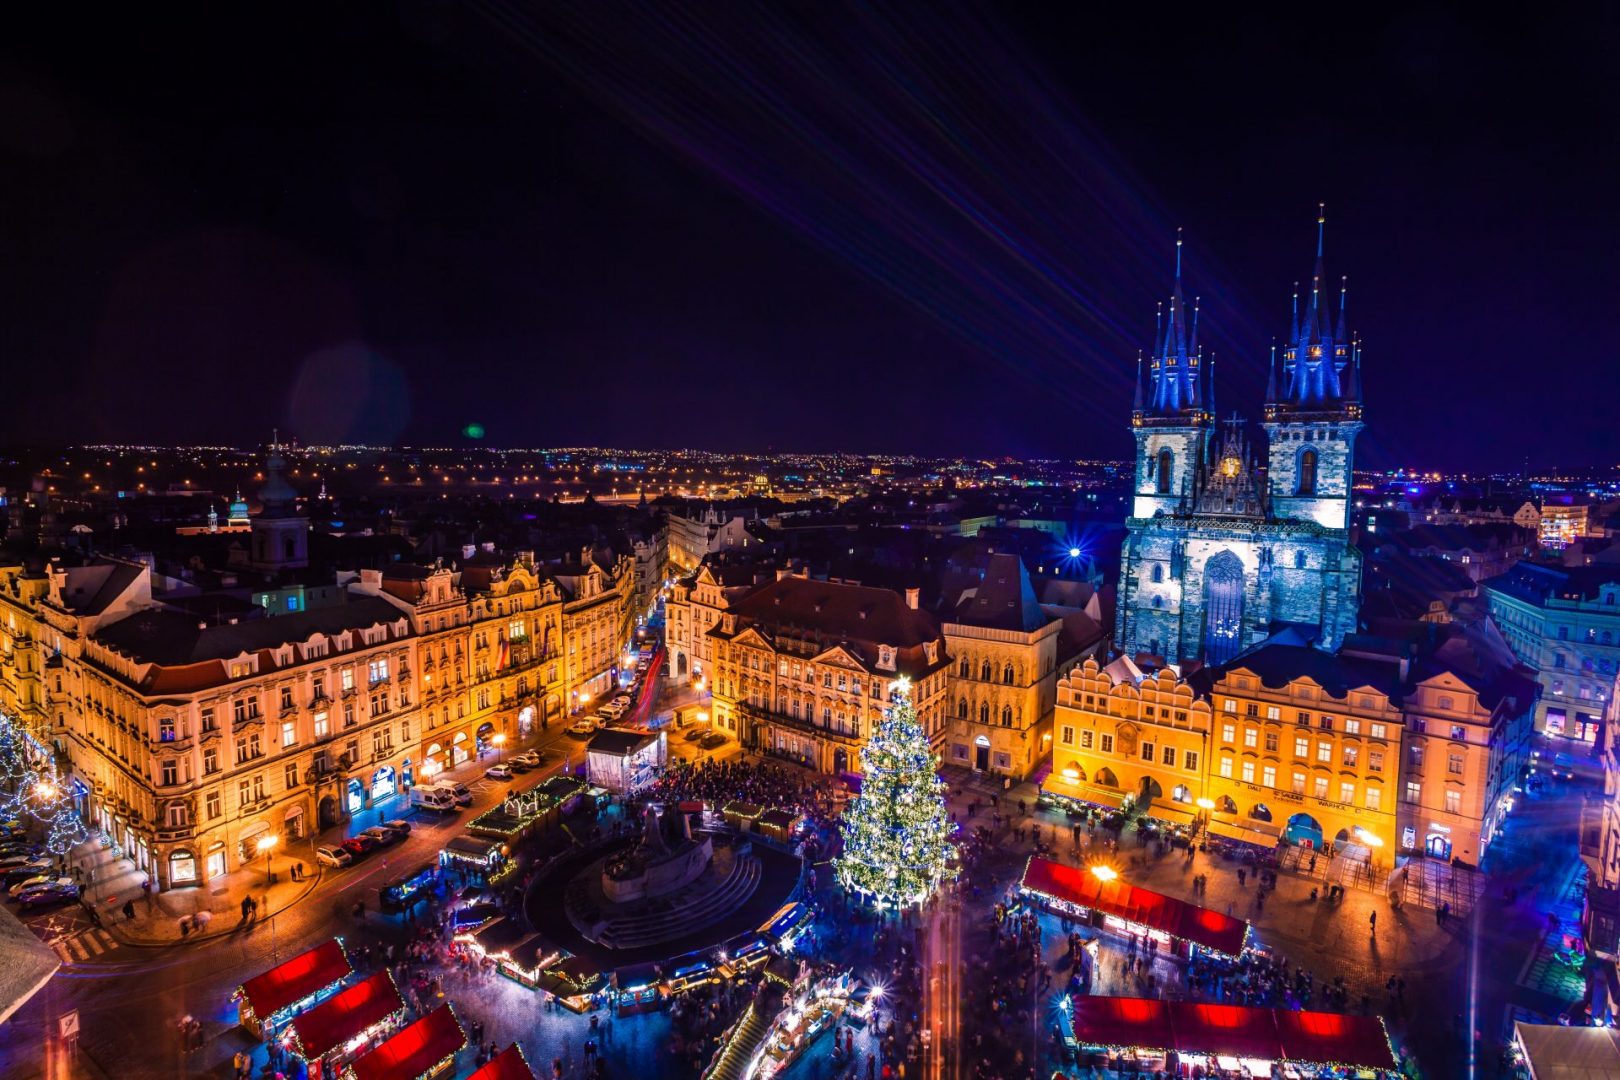 Approfitta del periodo natalizio per visitare Praga e iniziare il trattamento di fecondazione assistita thumbnail